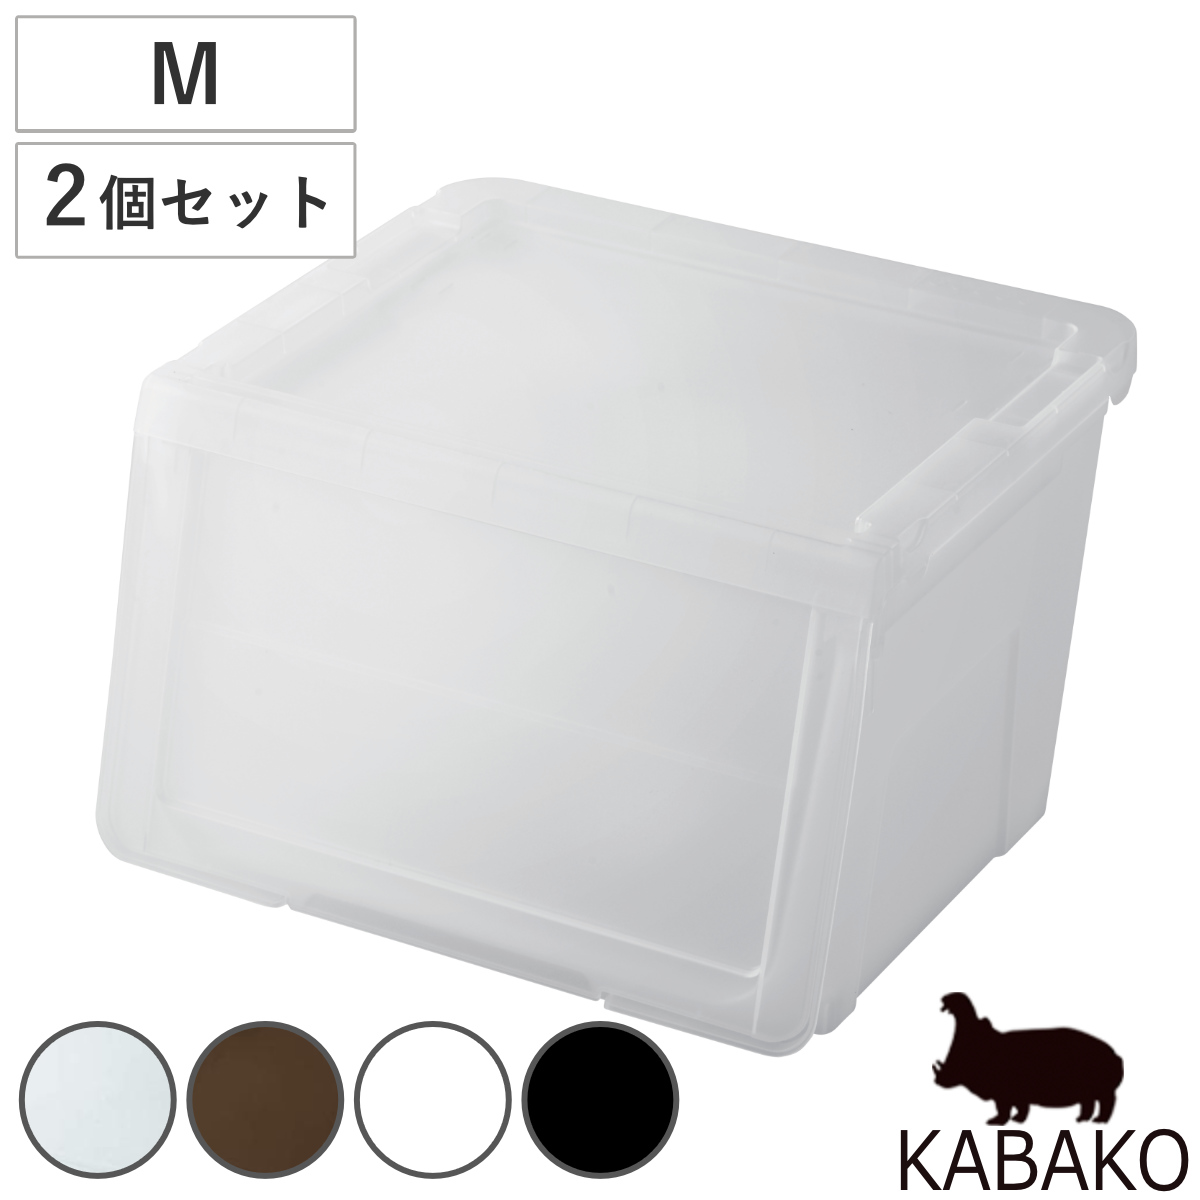 収納ボックス 前開き 幅45×奥行42×高さ31cm KABAKO カバコ M 同色2個